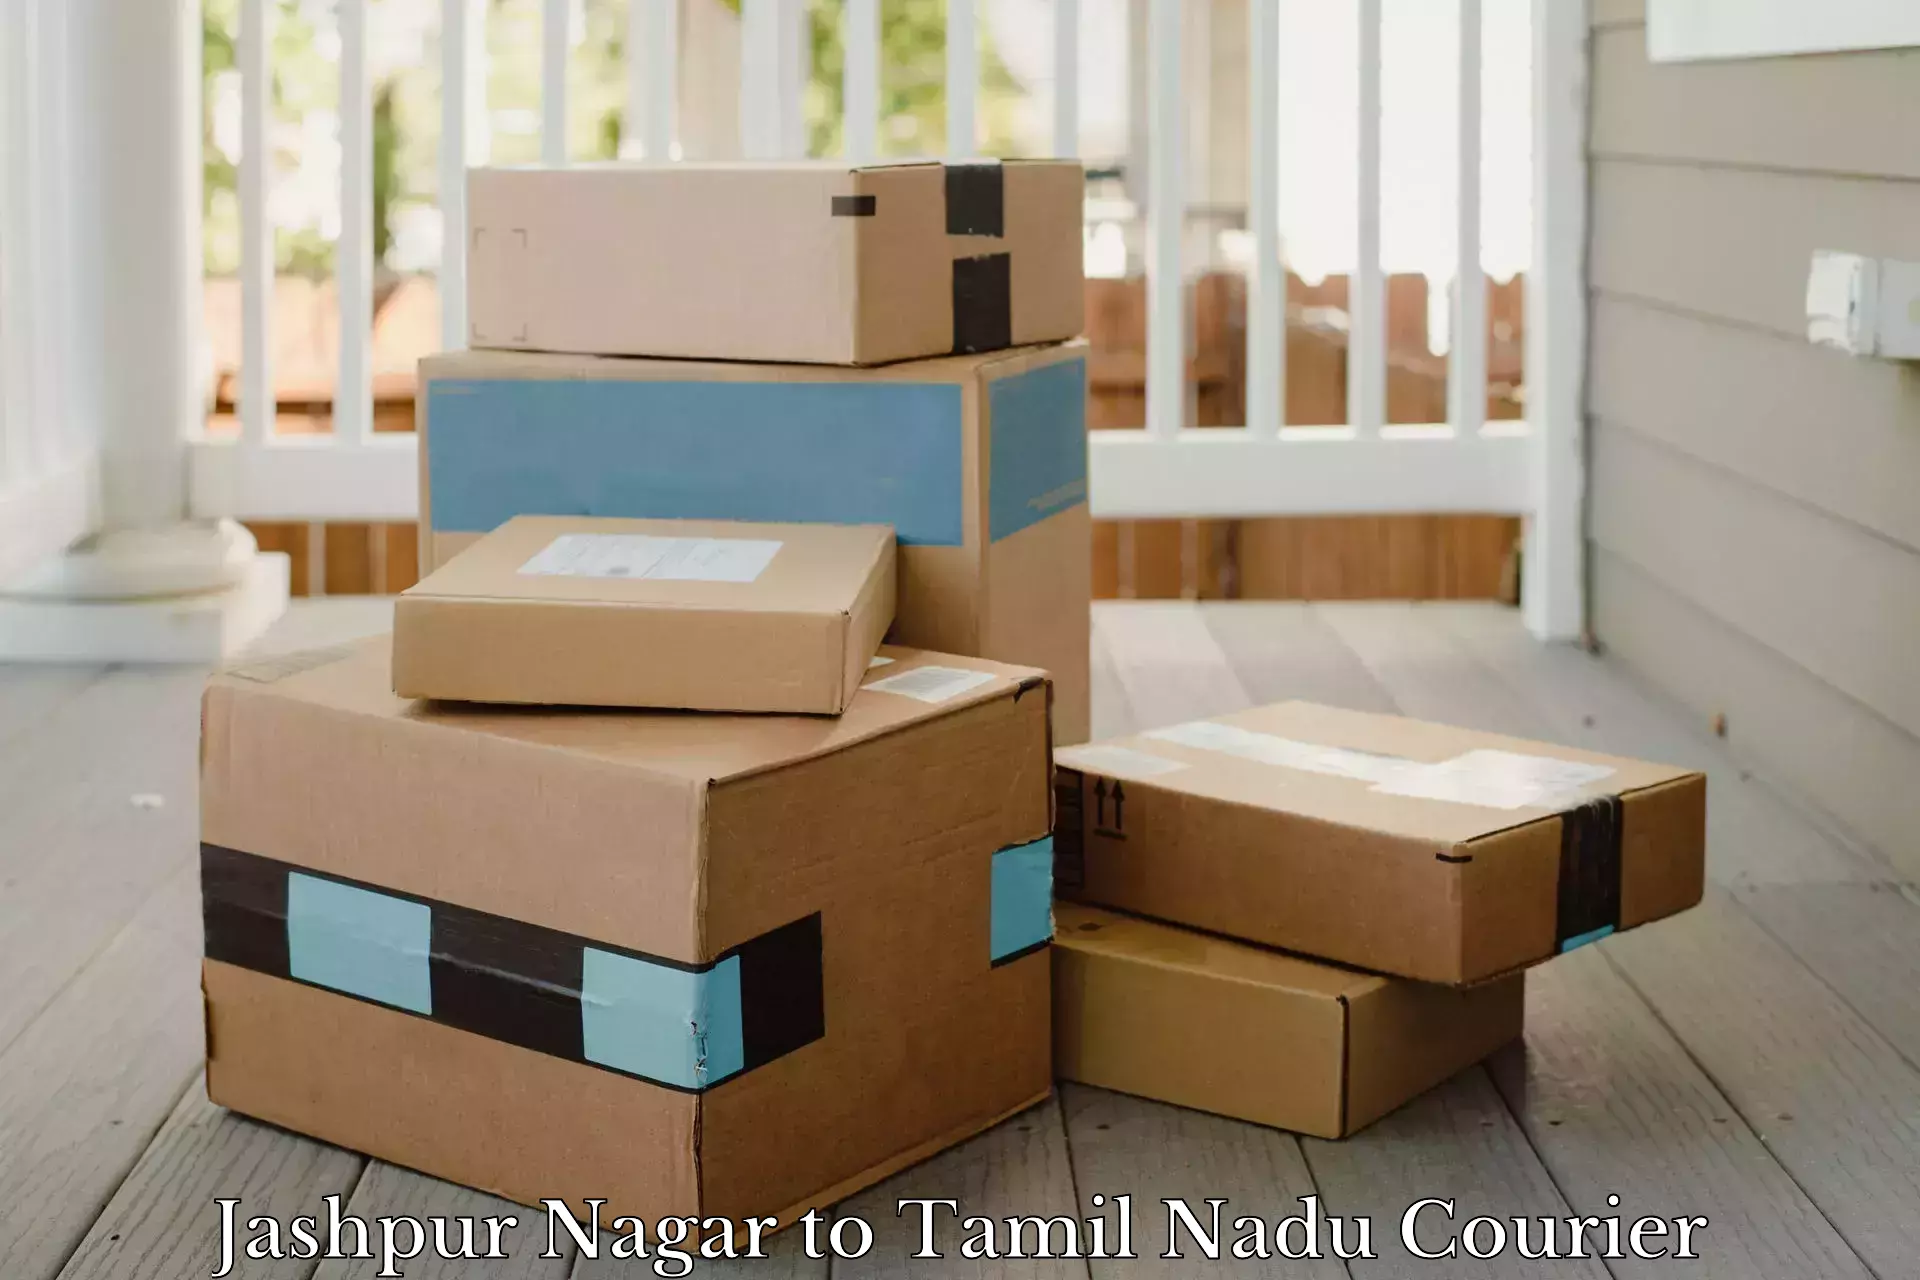 E-commerce fulfillment Jashpur Nagar to Chennai